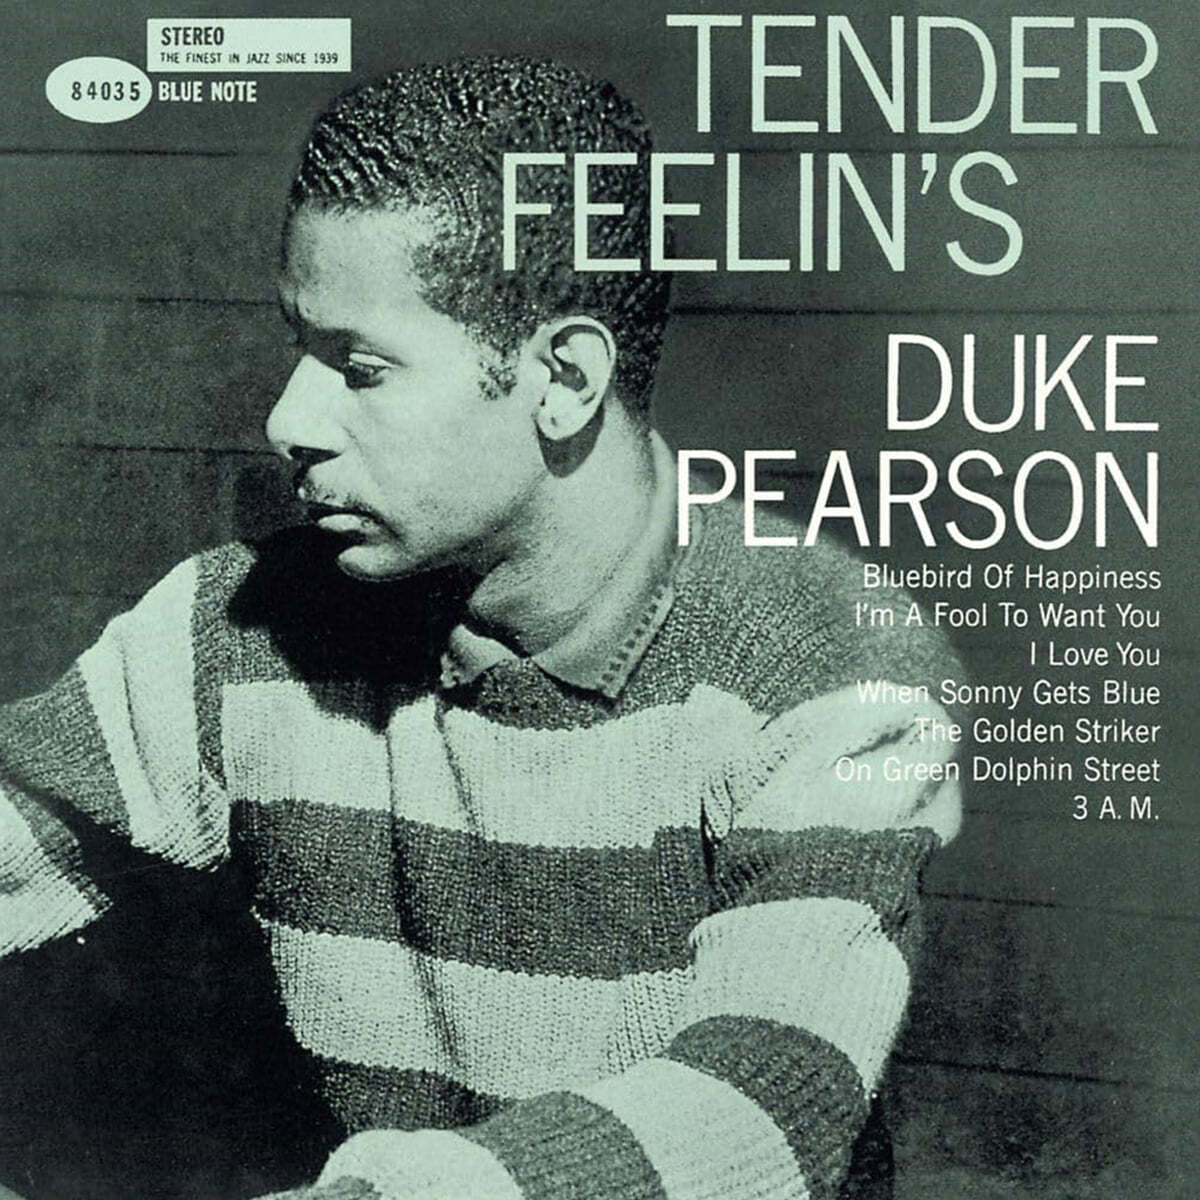 Duke Pearson (듀크 피어슨) - Tender feelings